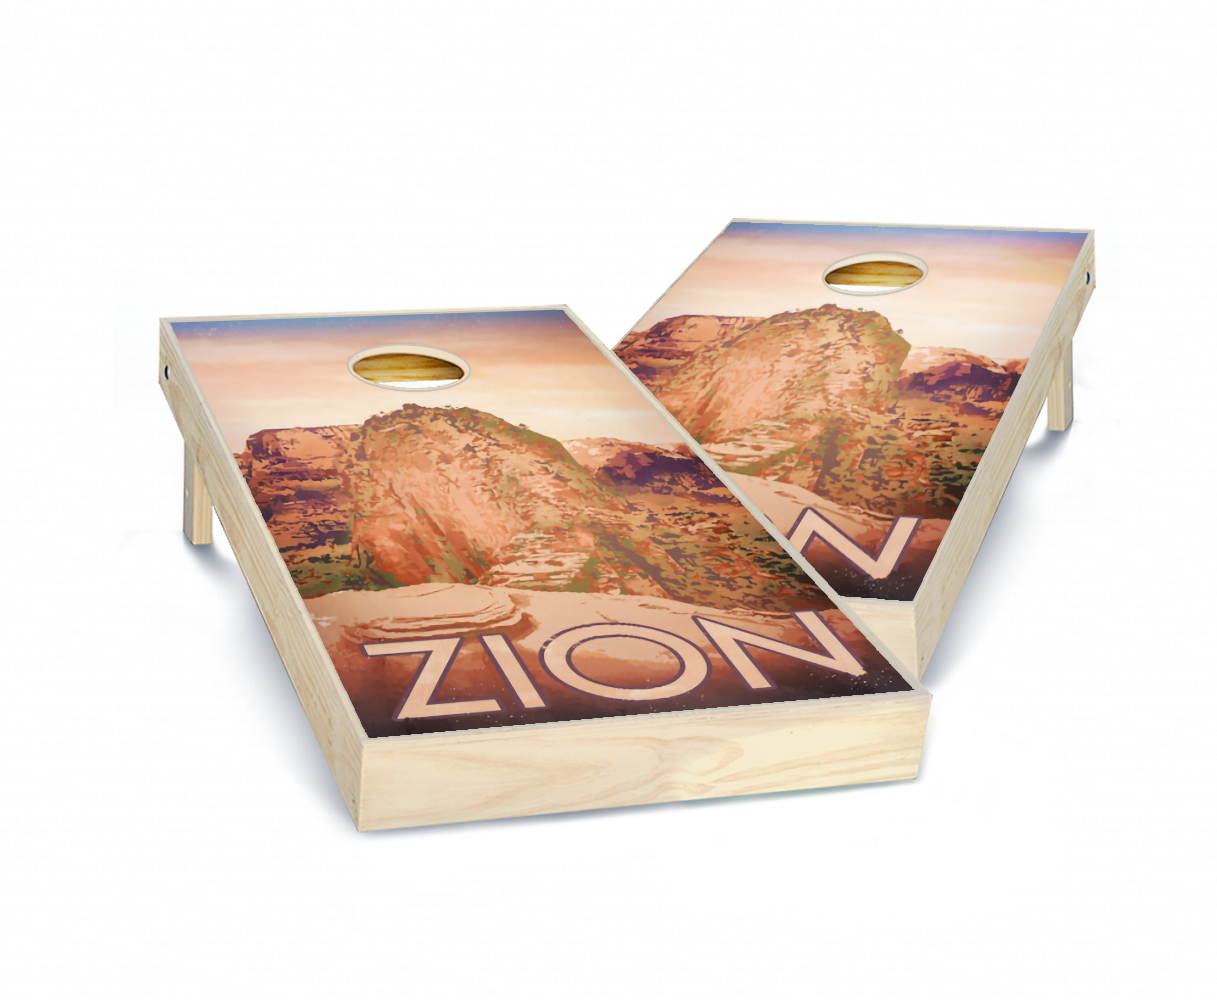 "Zion" National Park Cornhole Boards